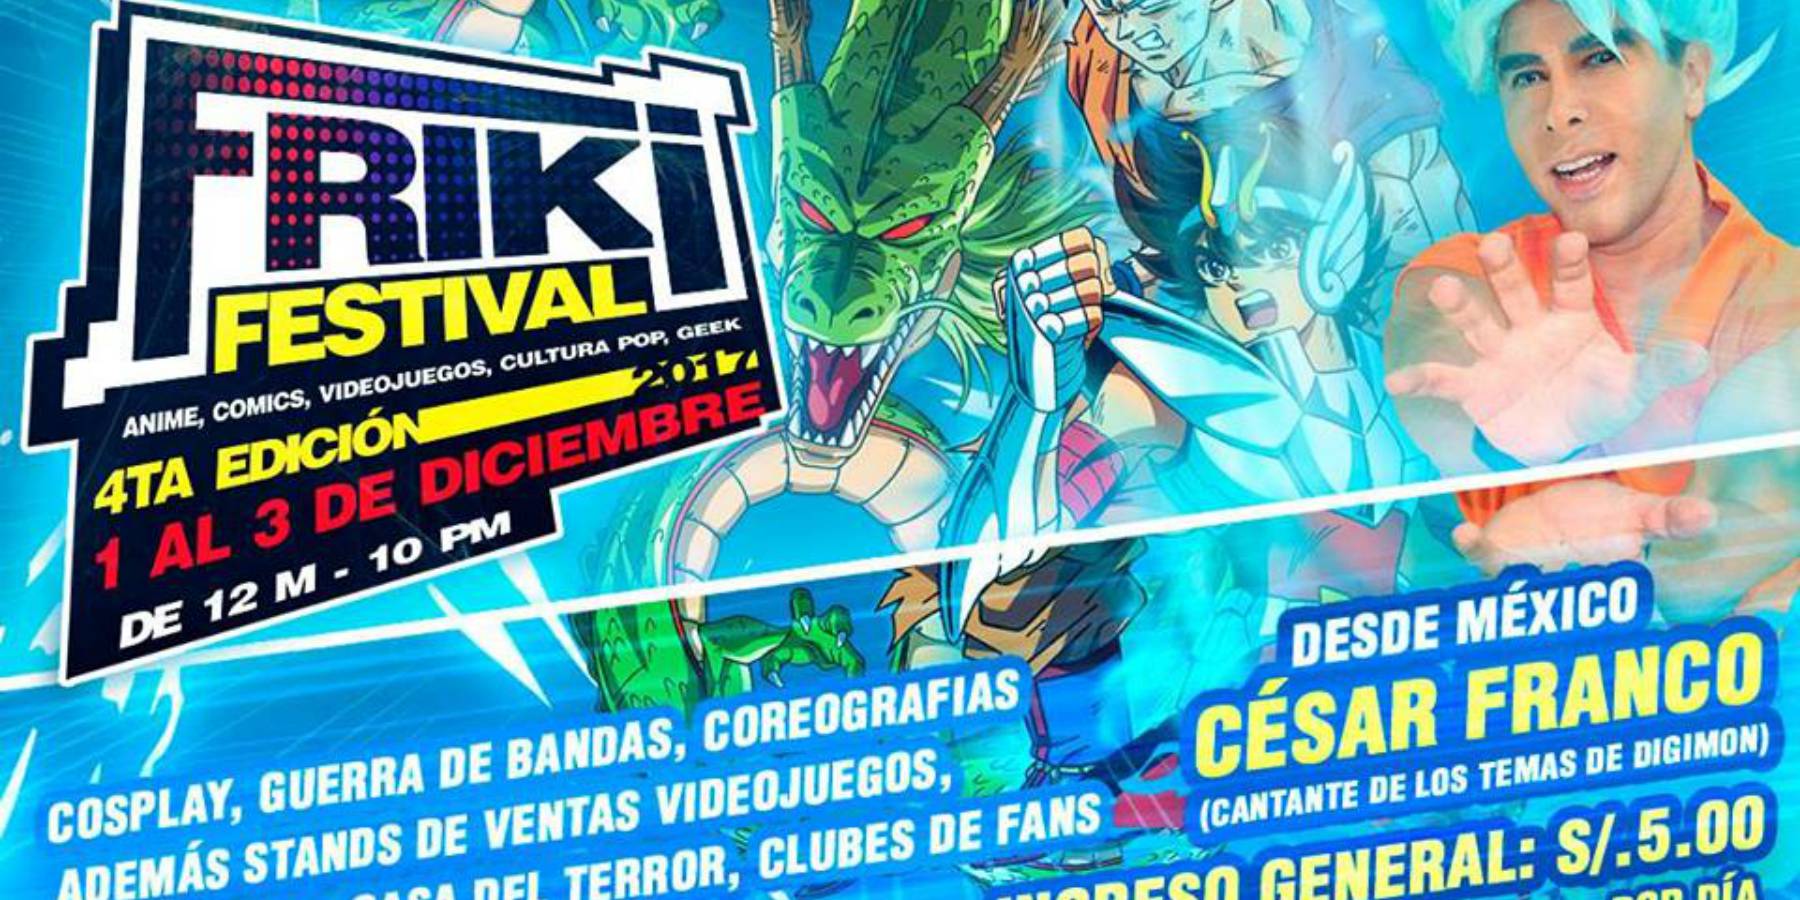 Friki Festival en Plaza Norte | 4ta Edición